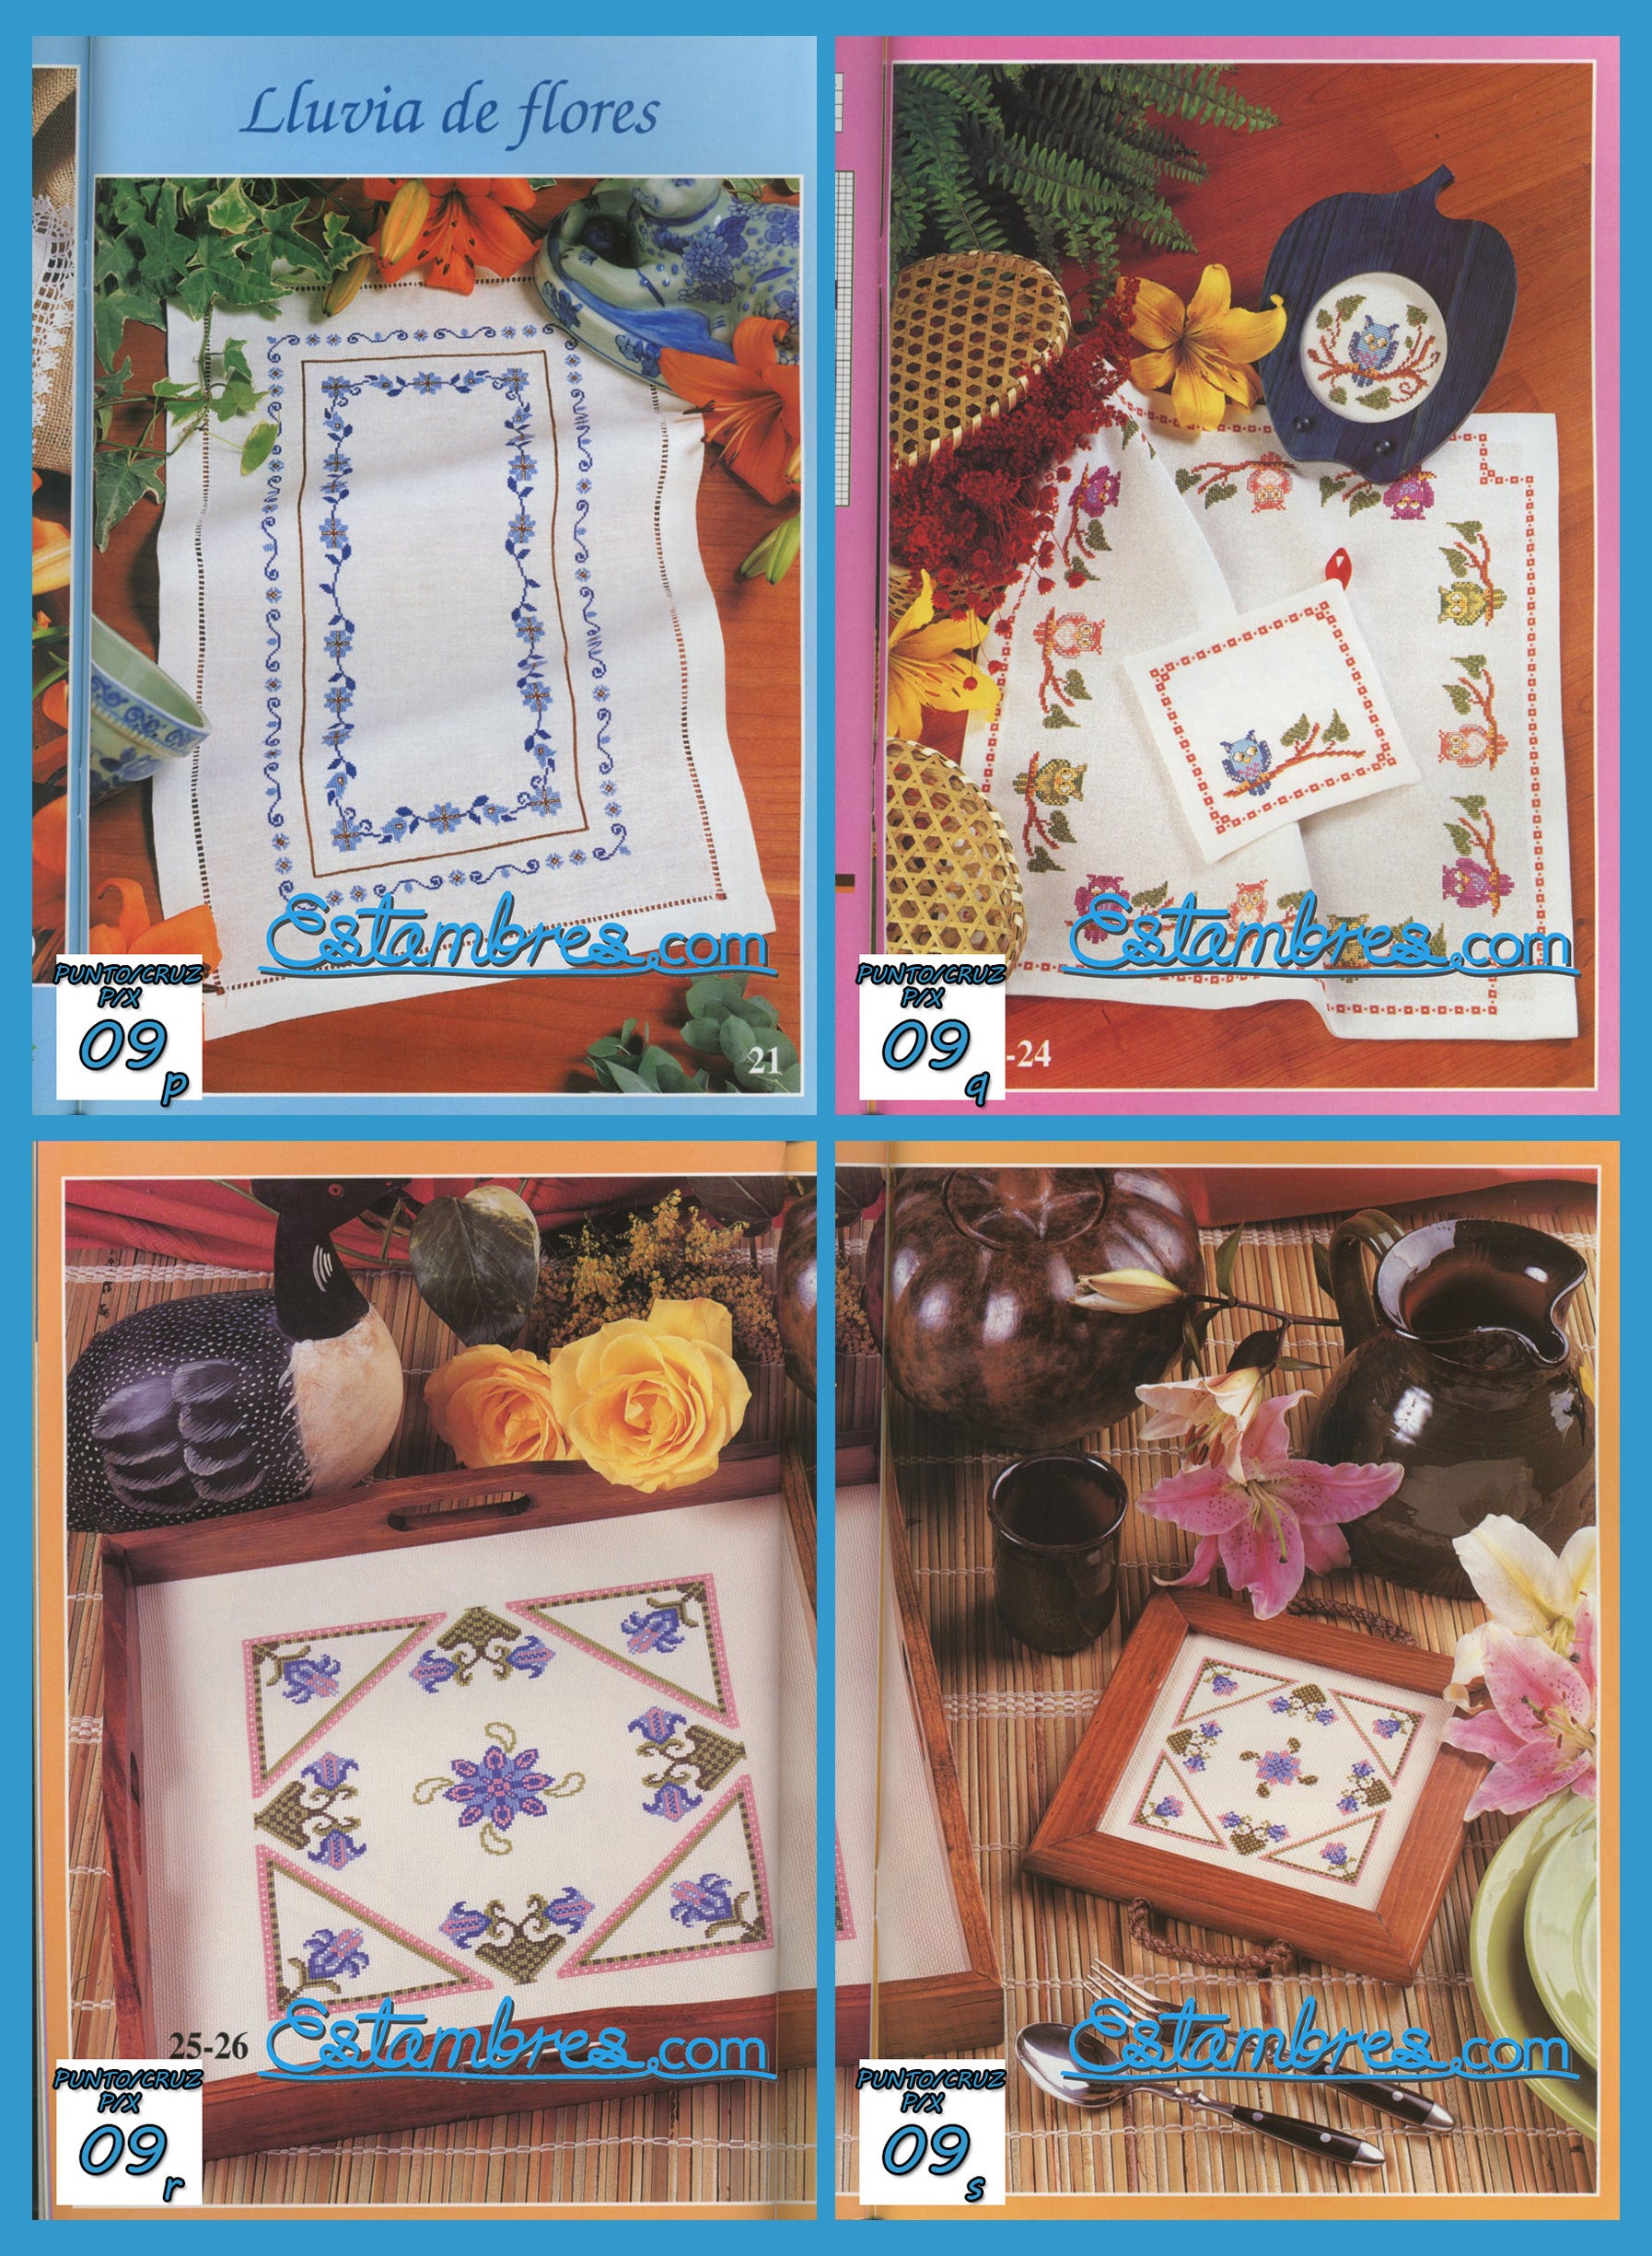 Revista Española de Punto de Cruz de la coleccion Artime, contiene muestras elaboradas en punto de cruz, con sus respectivos esquemas de Punto de Cruz, y su respectiva lista de colores a usar, para cada grafico.